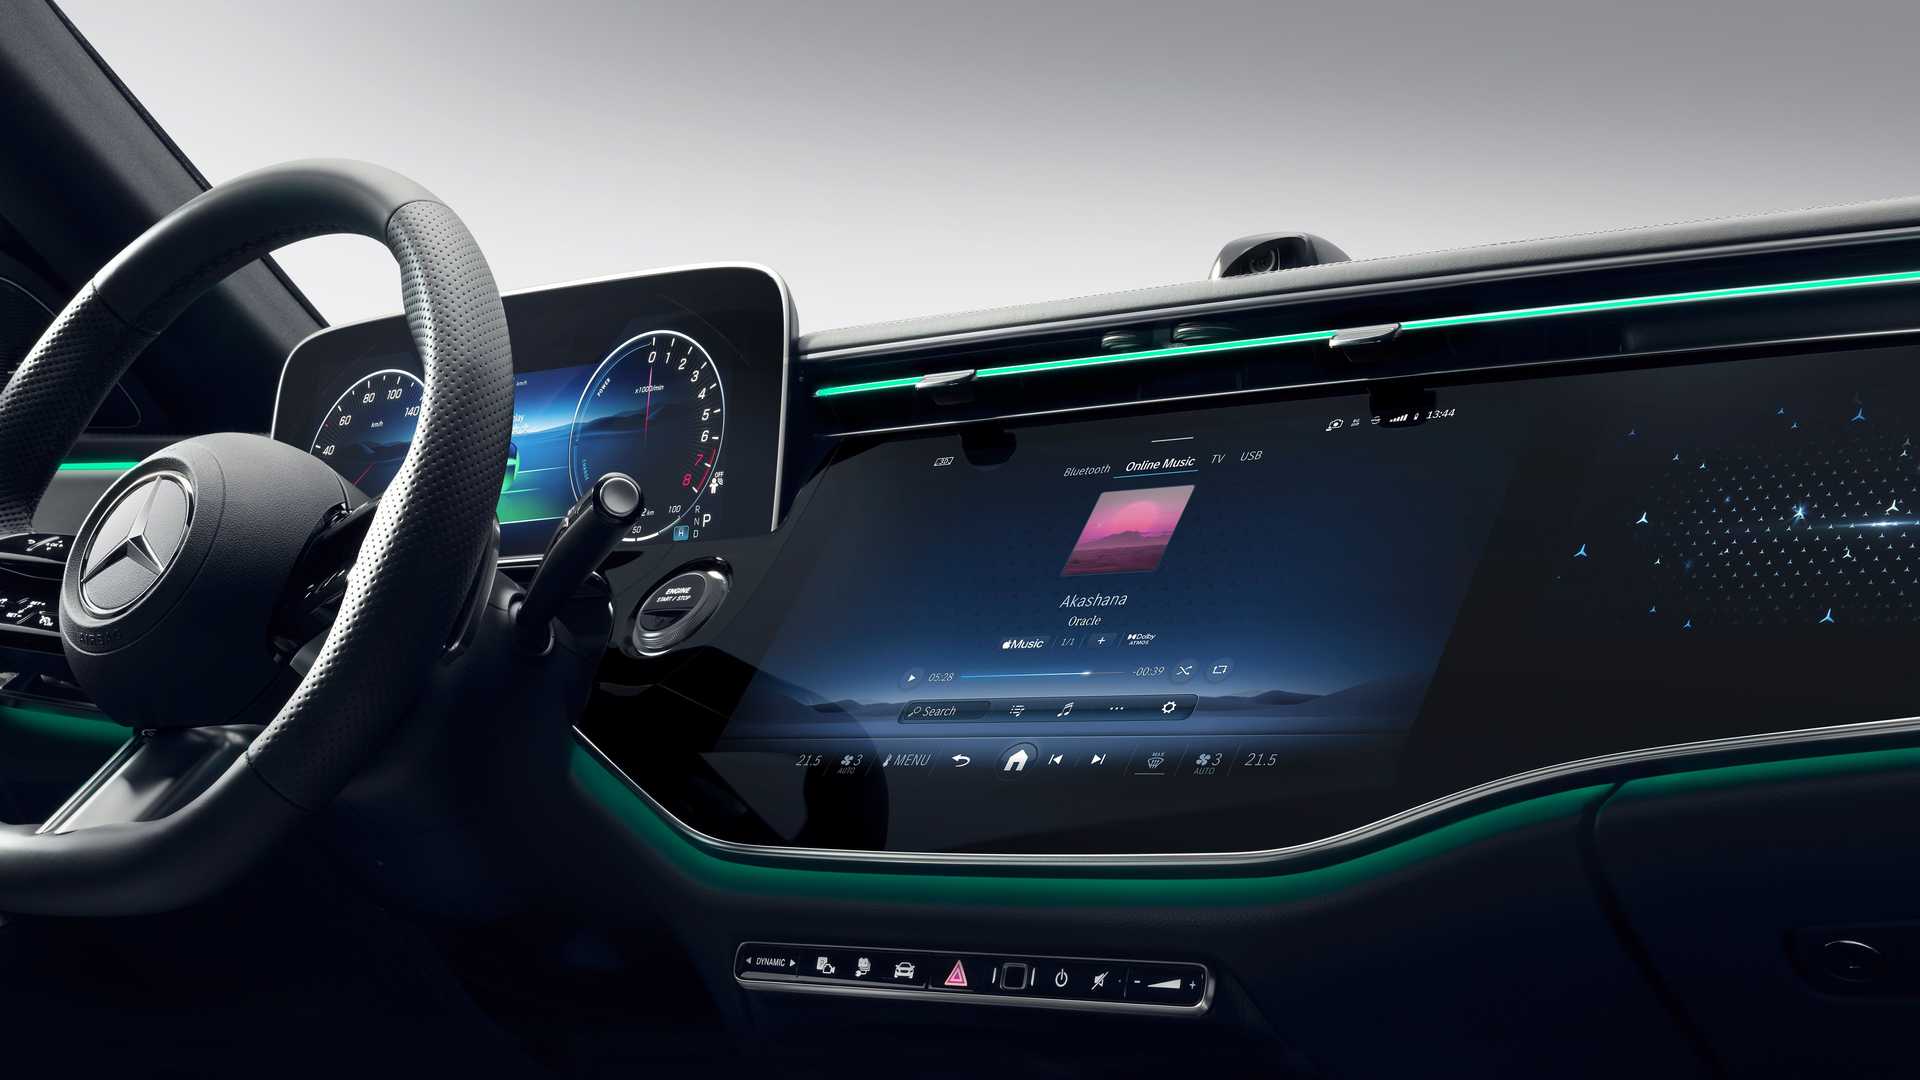 Mercedes-Benz công bố sớm nội thất E-Class mới với màn hình khổng lồ, TikTok và camera selfie mặc định - Ảnh 6.